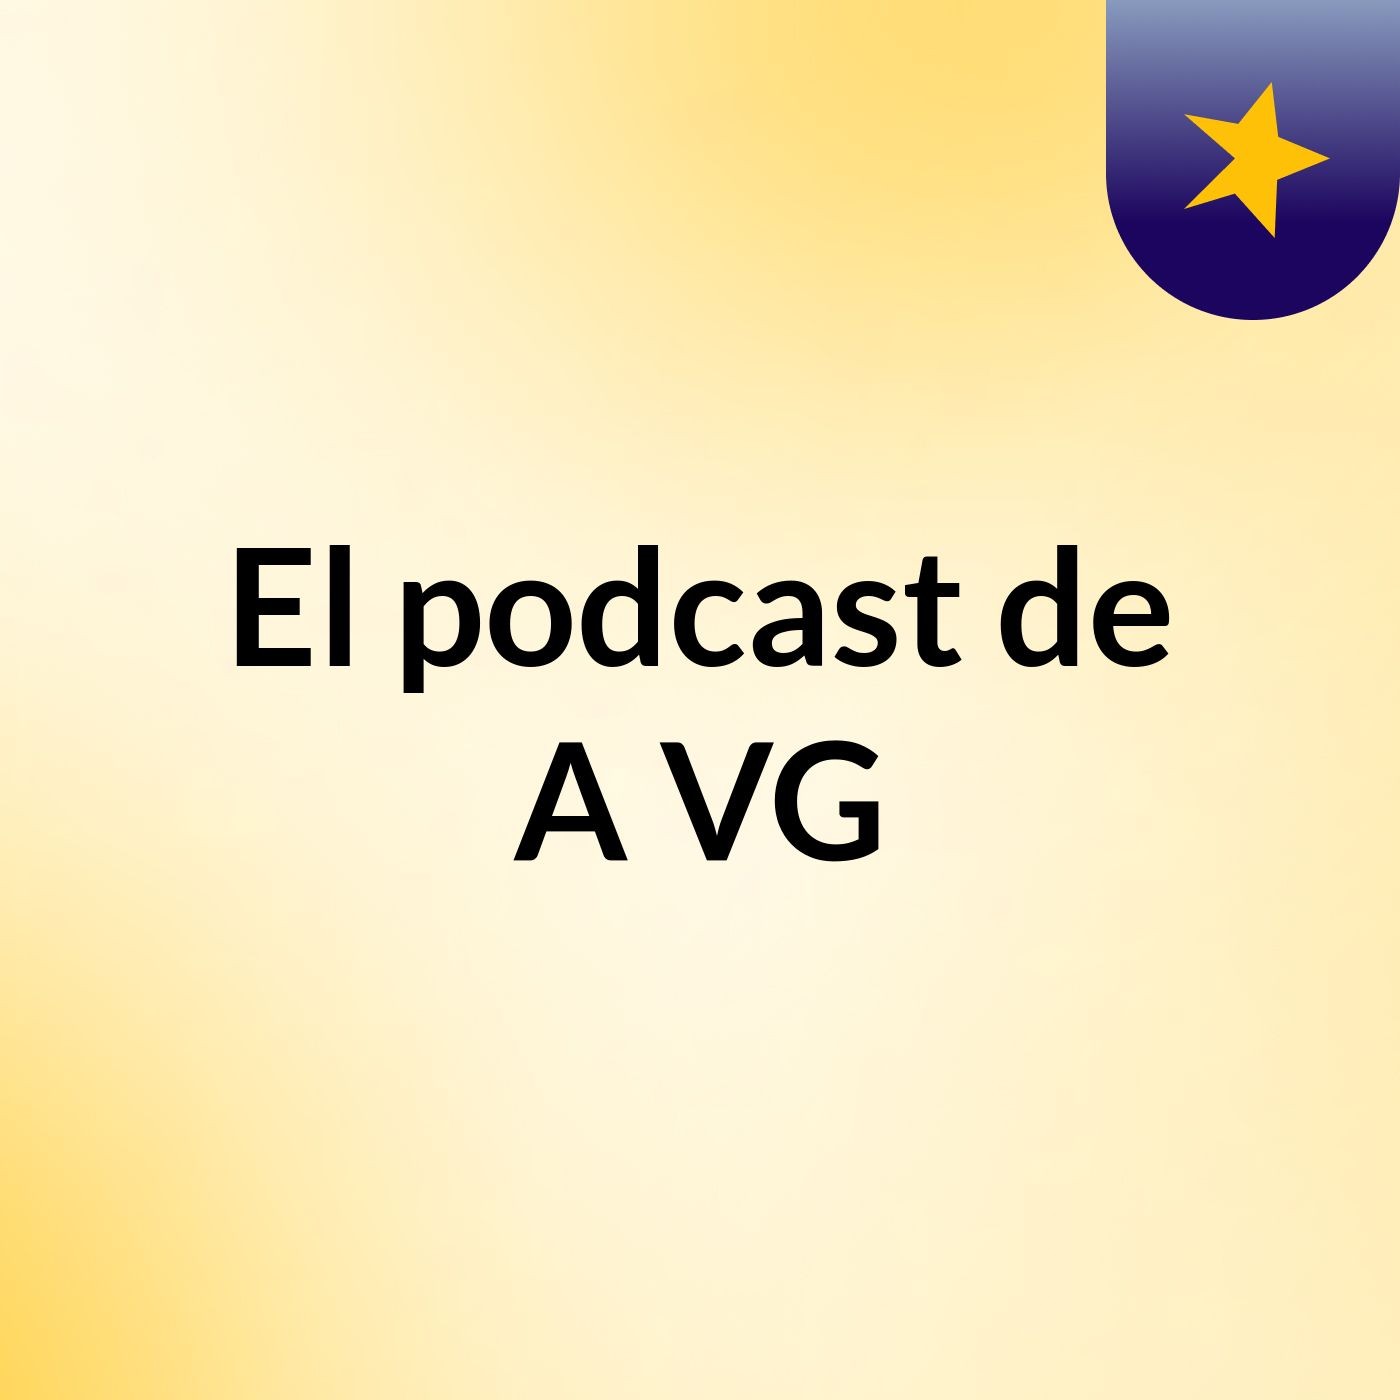 El podcast de A VG